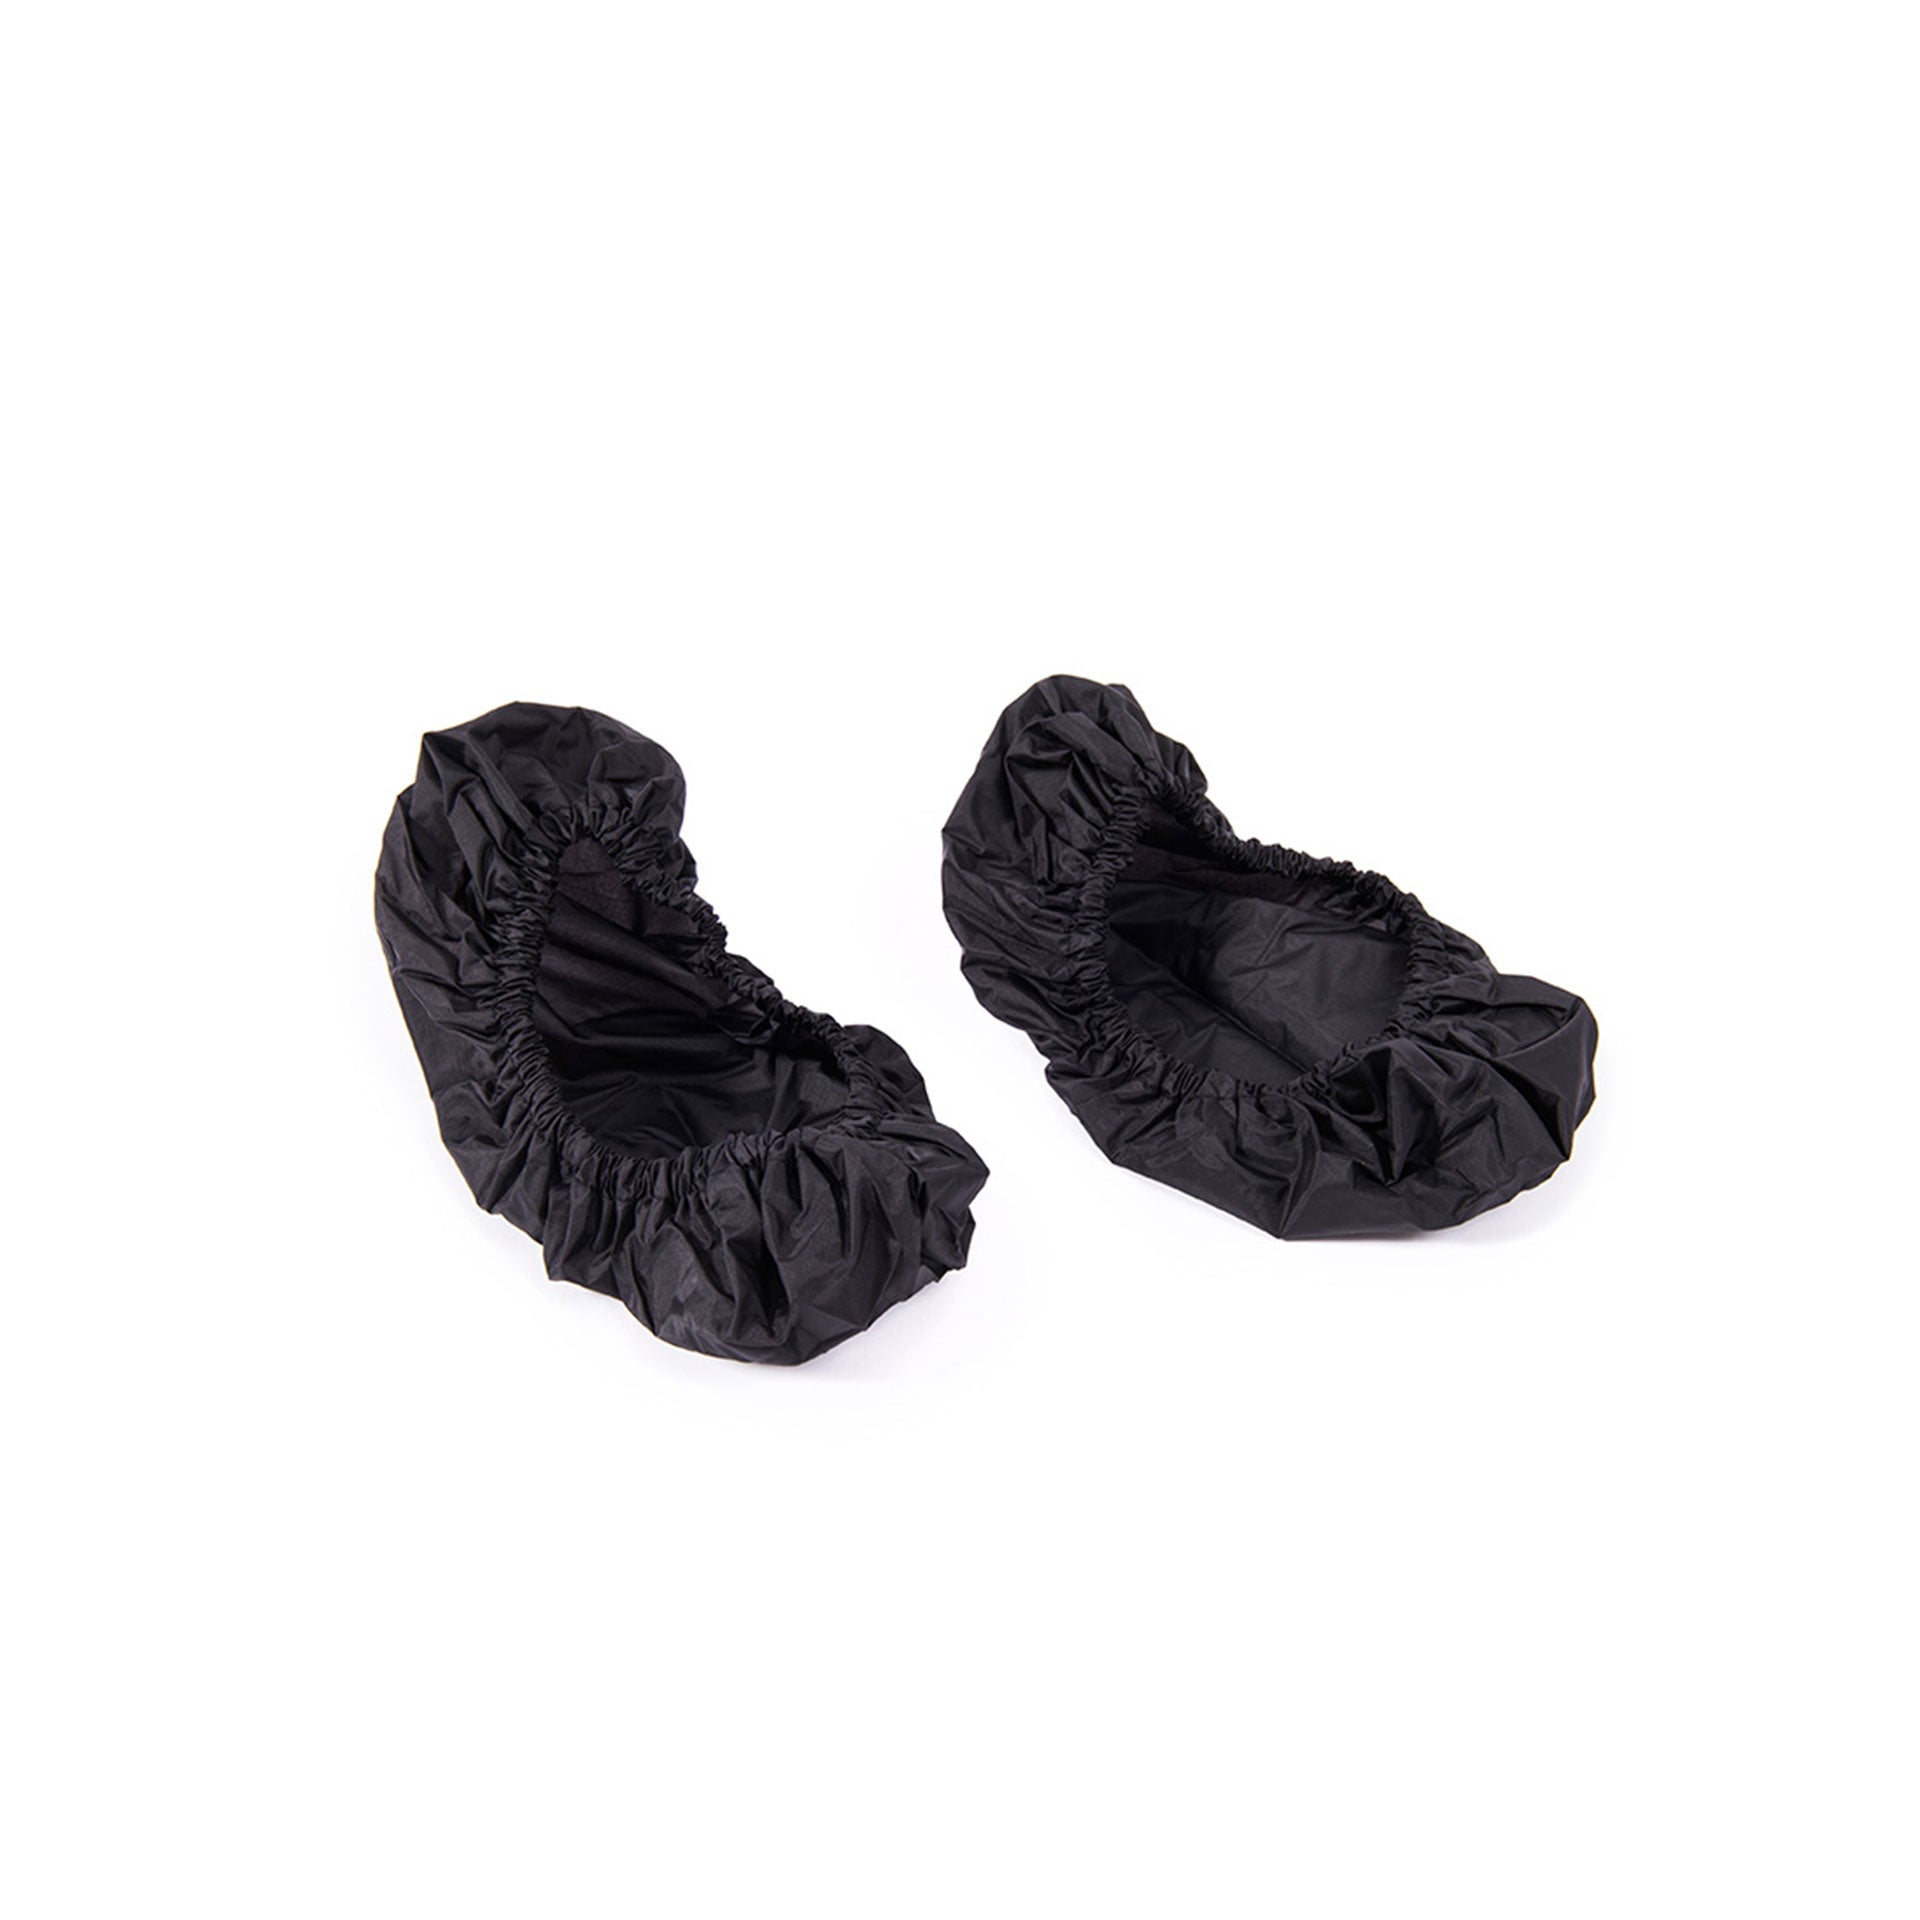 Powerslider glide socks (1 pair)